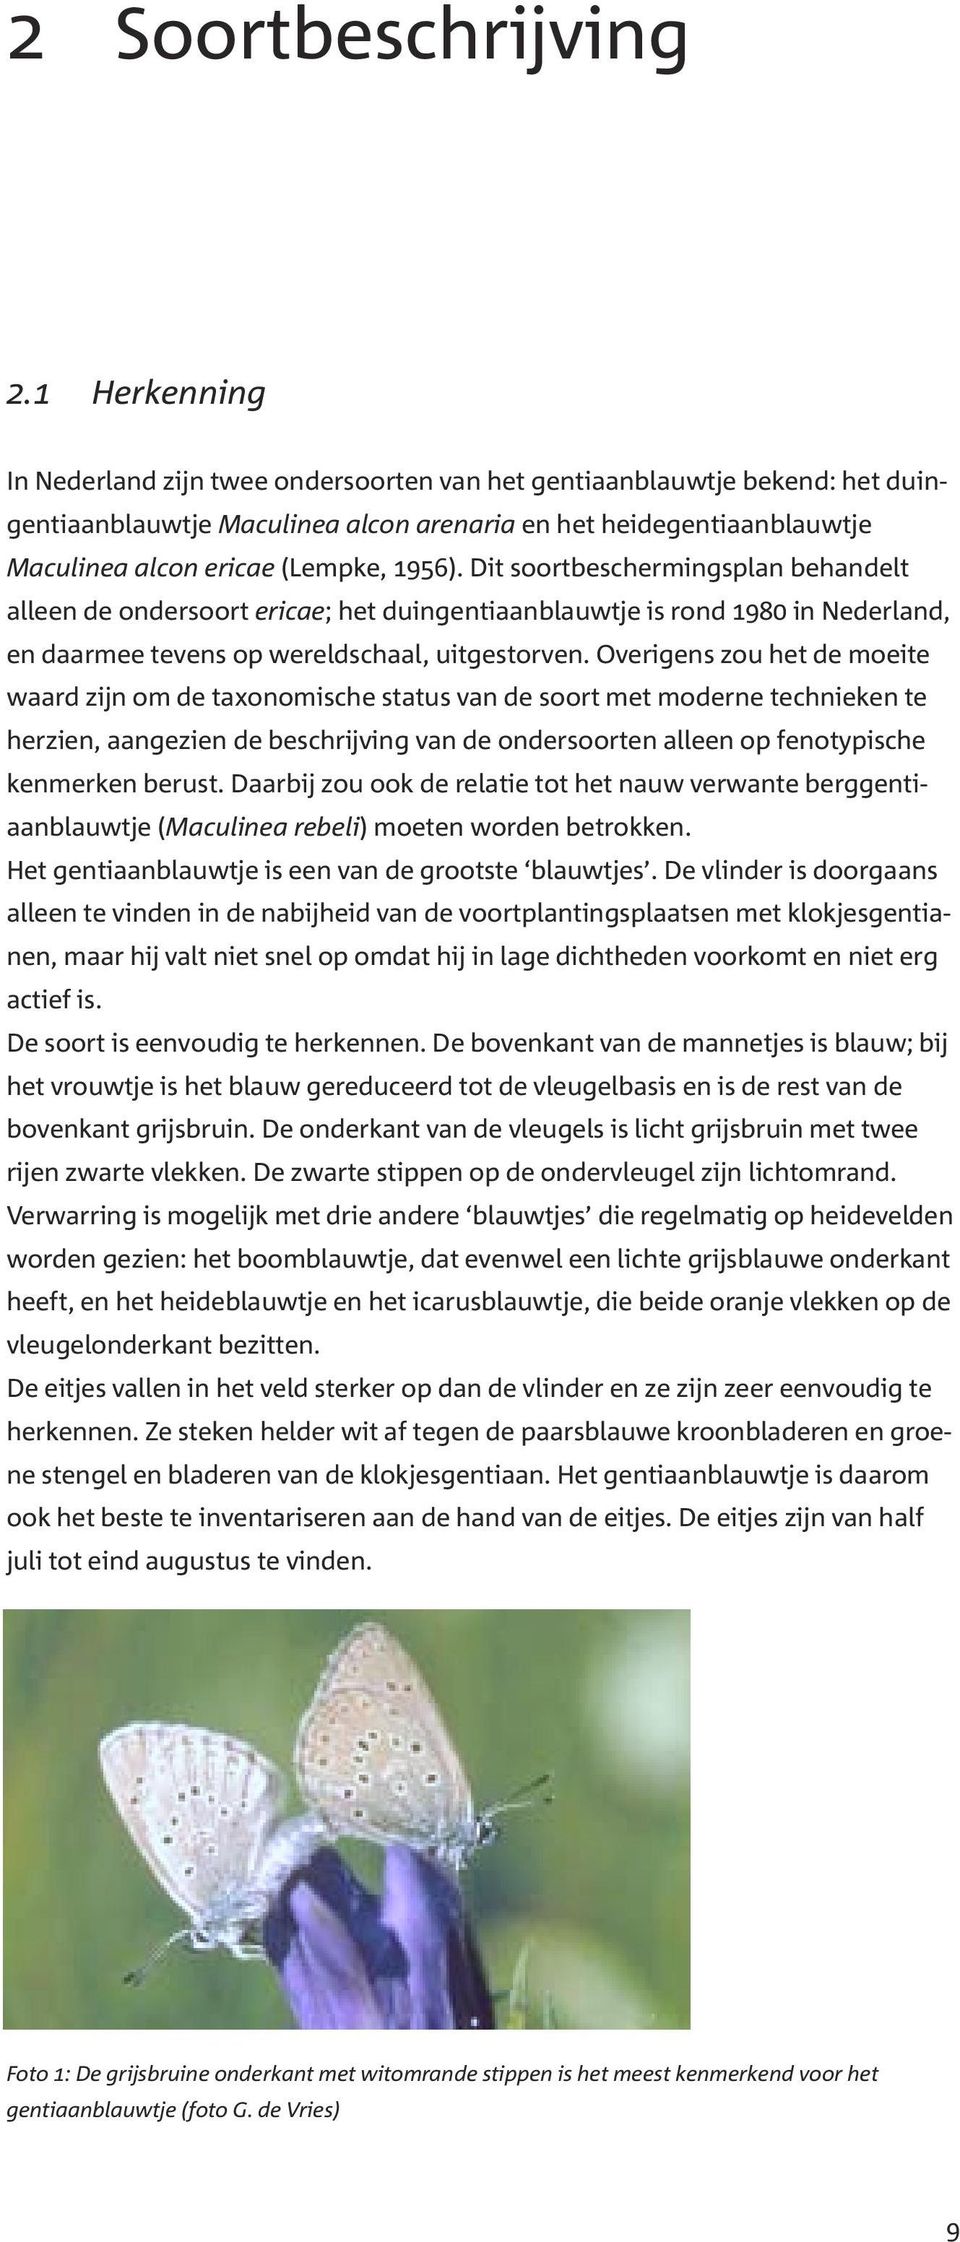 Dit soortbeschermingsplan behandelt alleen de ondersoort ericae; het duingentiaanblauwtje is rond 1980 in Nederland, en daarmee tevens op wereldschaal, uitgestorven.